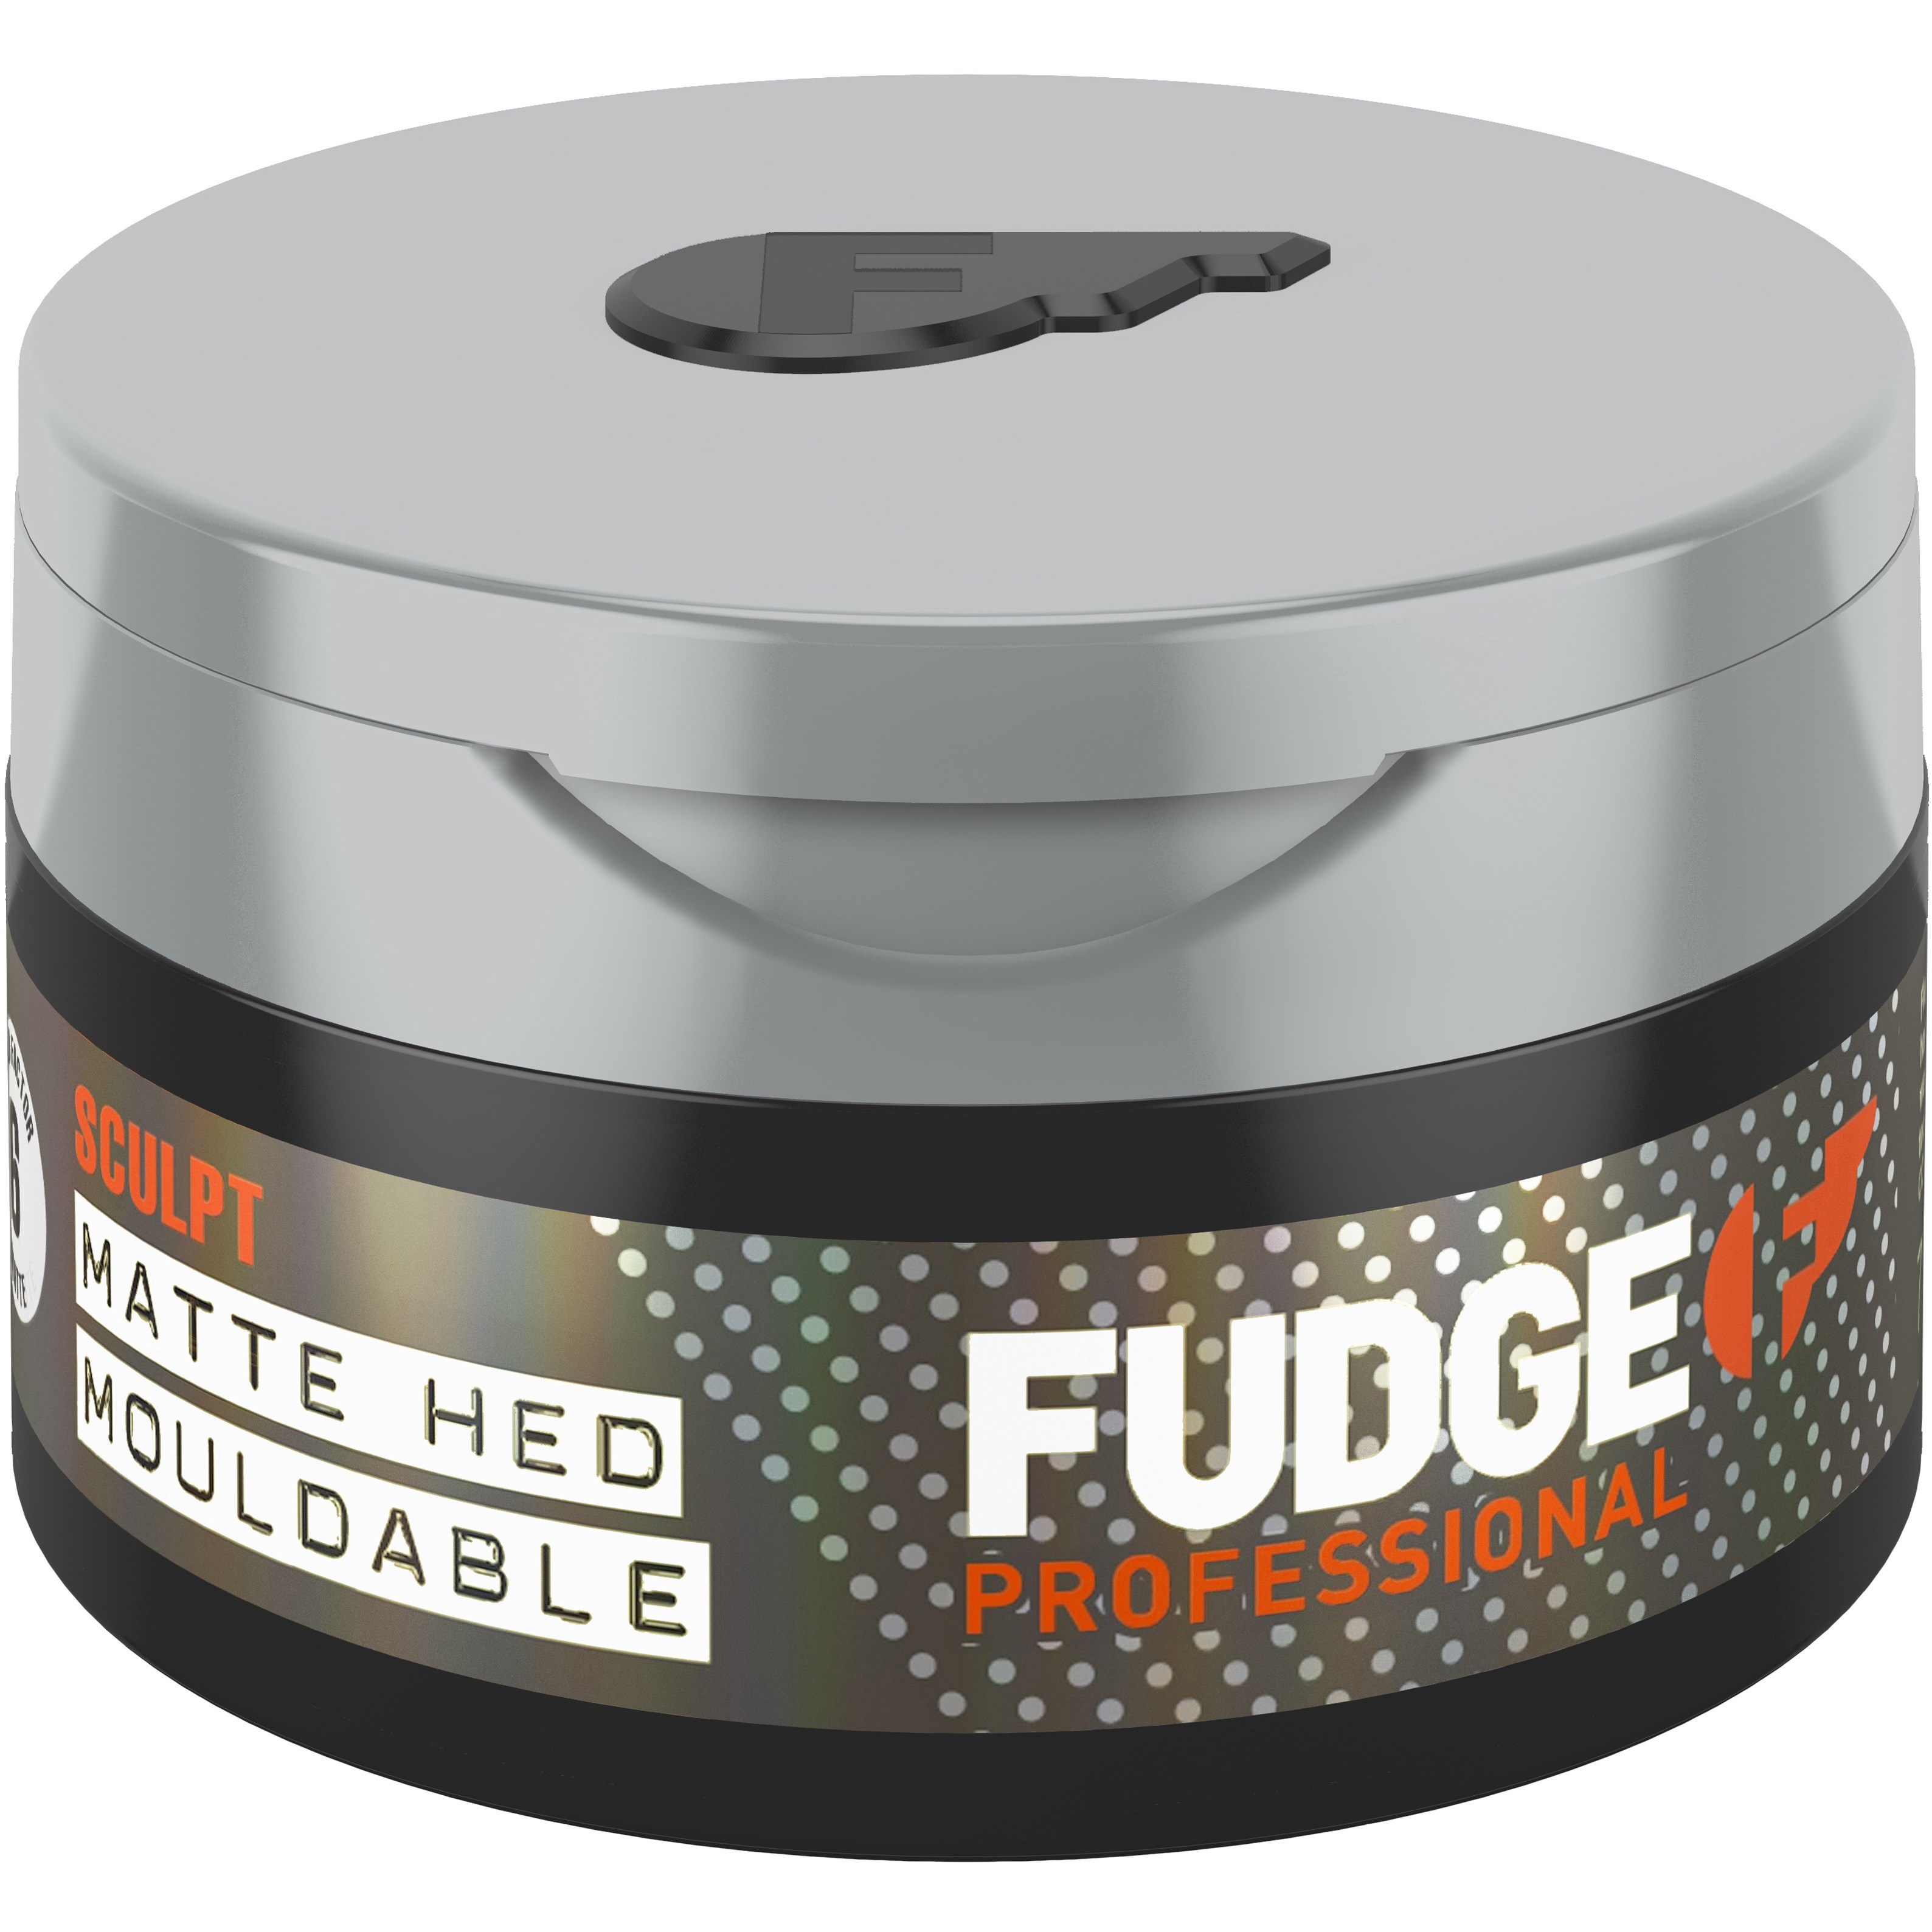 Läs mer om fudge Matte Hed Mouldable